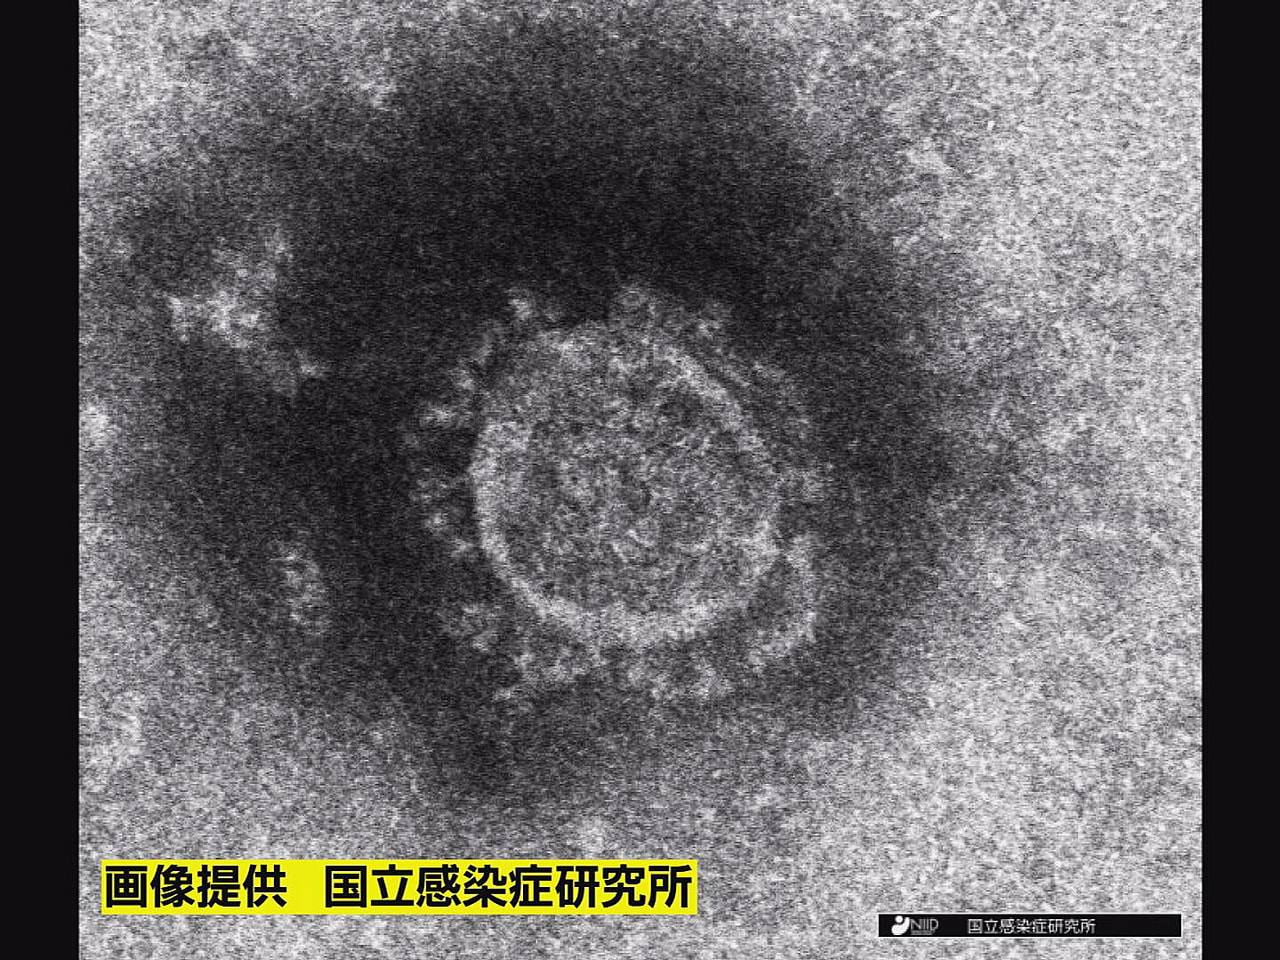 岐阜県は２２日、県内で新型コロナウイルスの新たな感染者は確認されなかったと発表し...